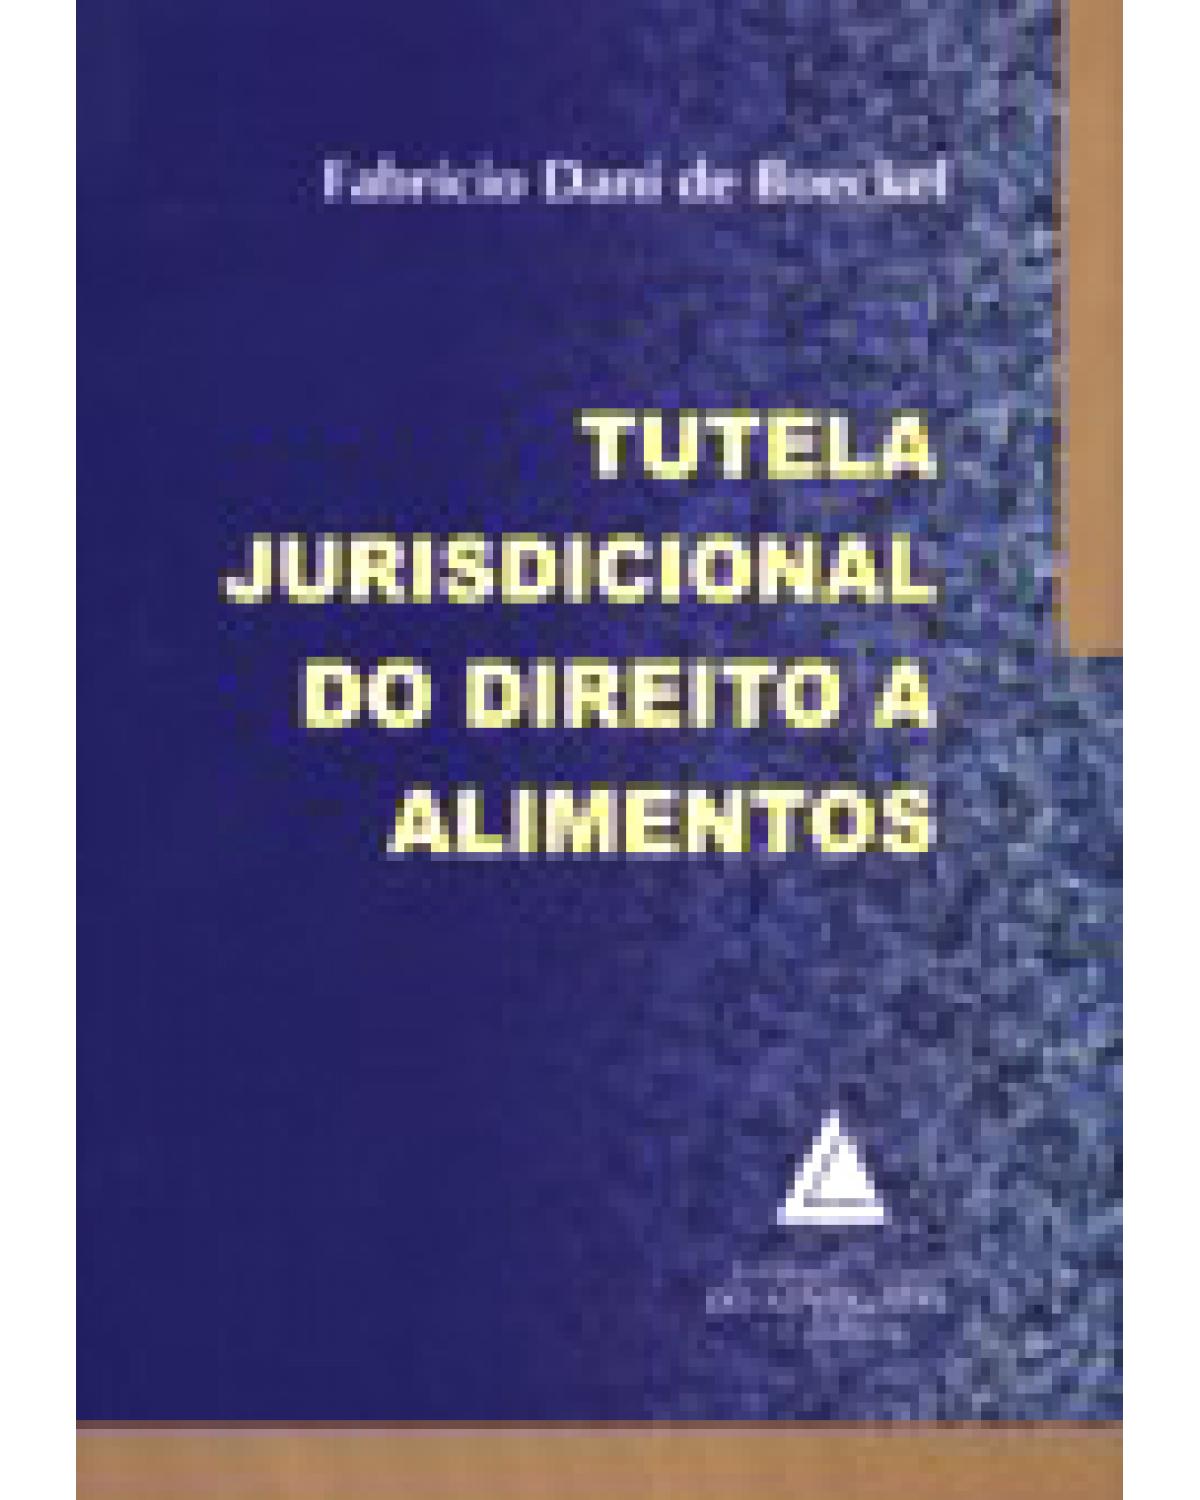 Tutela jurisdicional do direito a alimentos - 1ª Edição | 2007